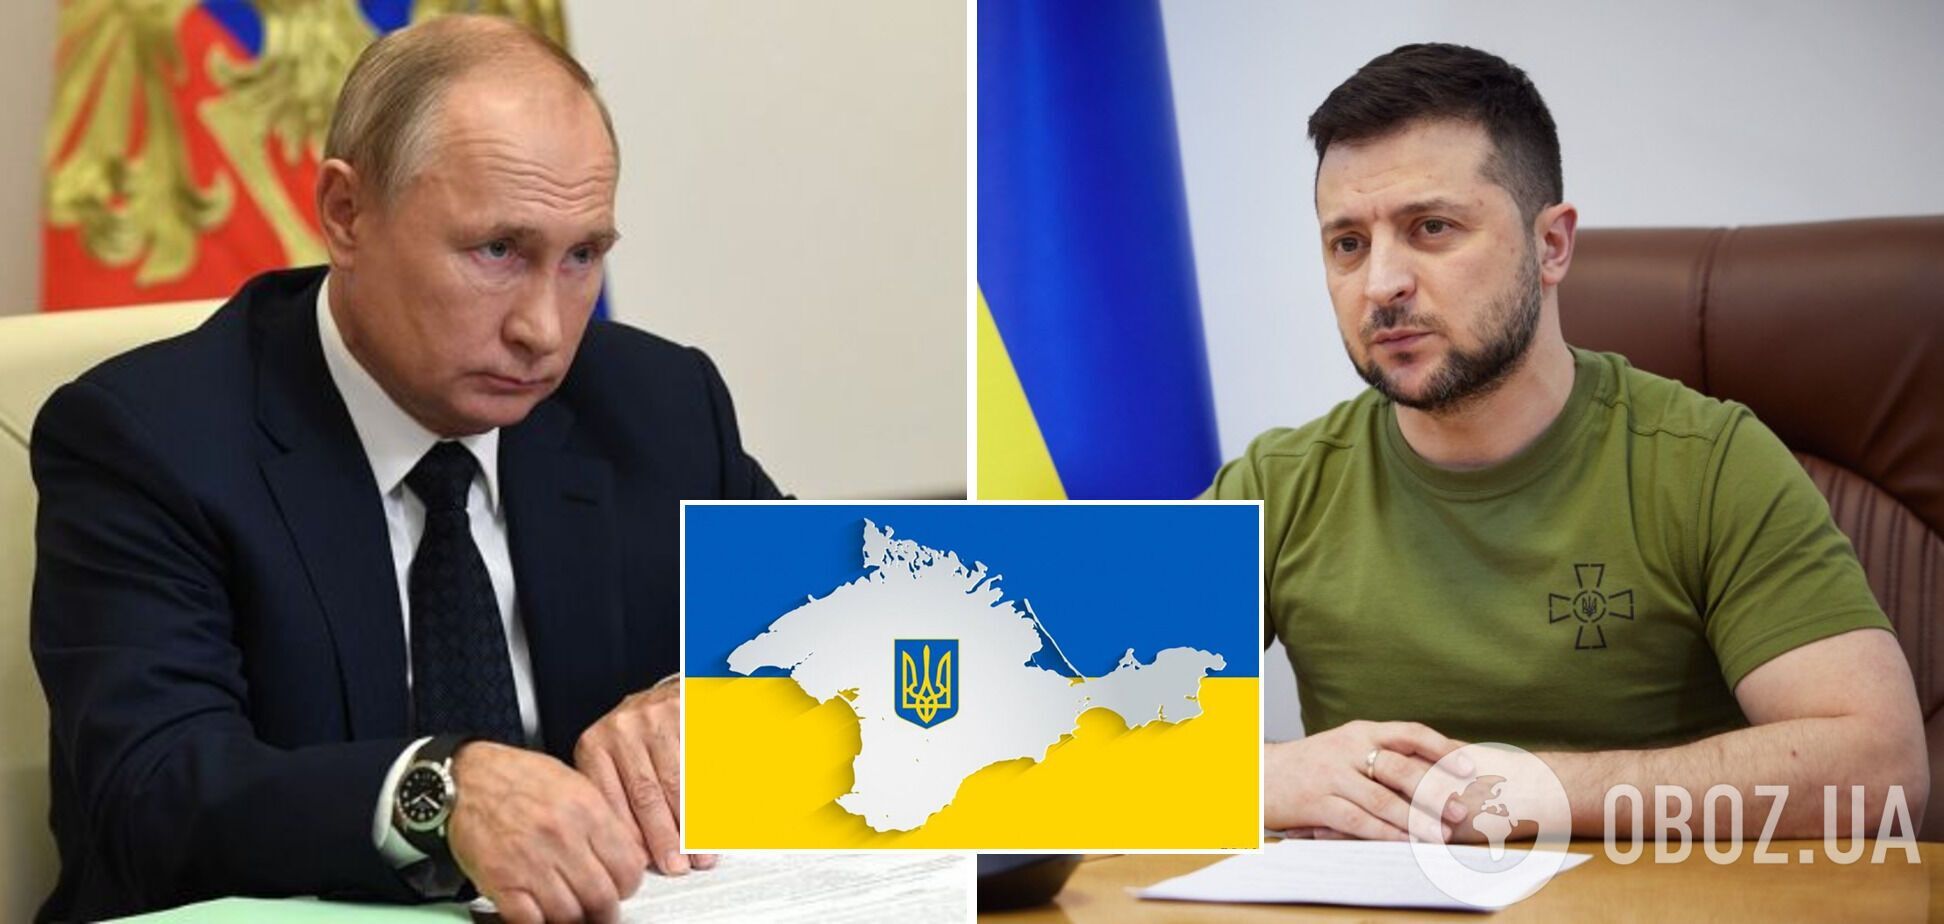 Повернення Криму Україні має бути основою угоди між Києвом і Москвою